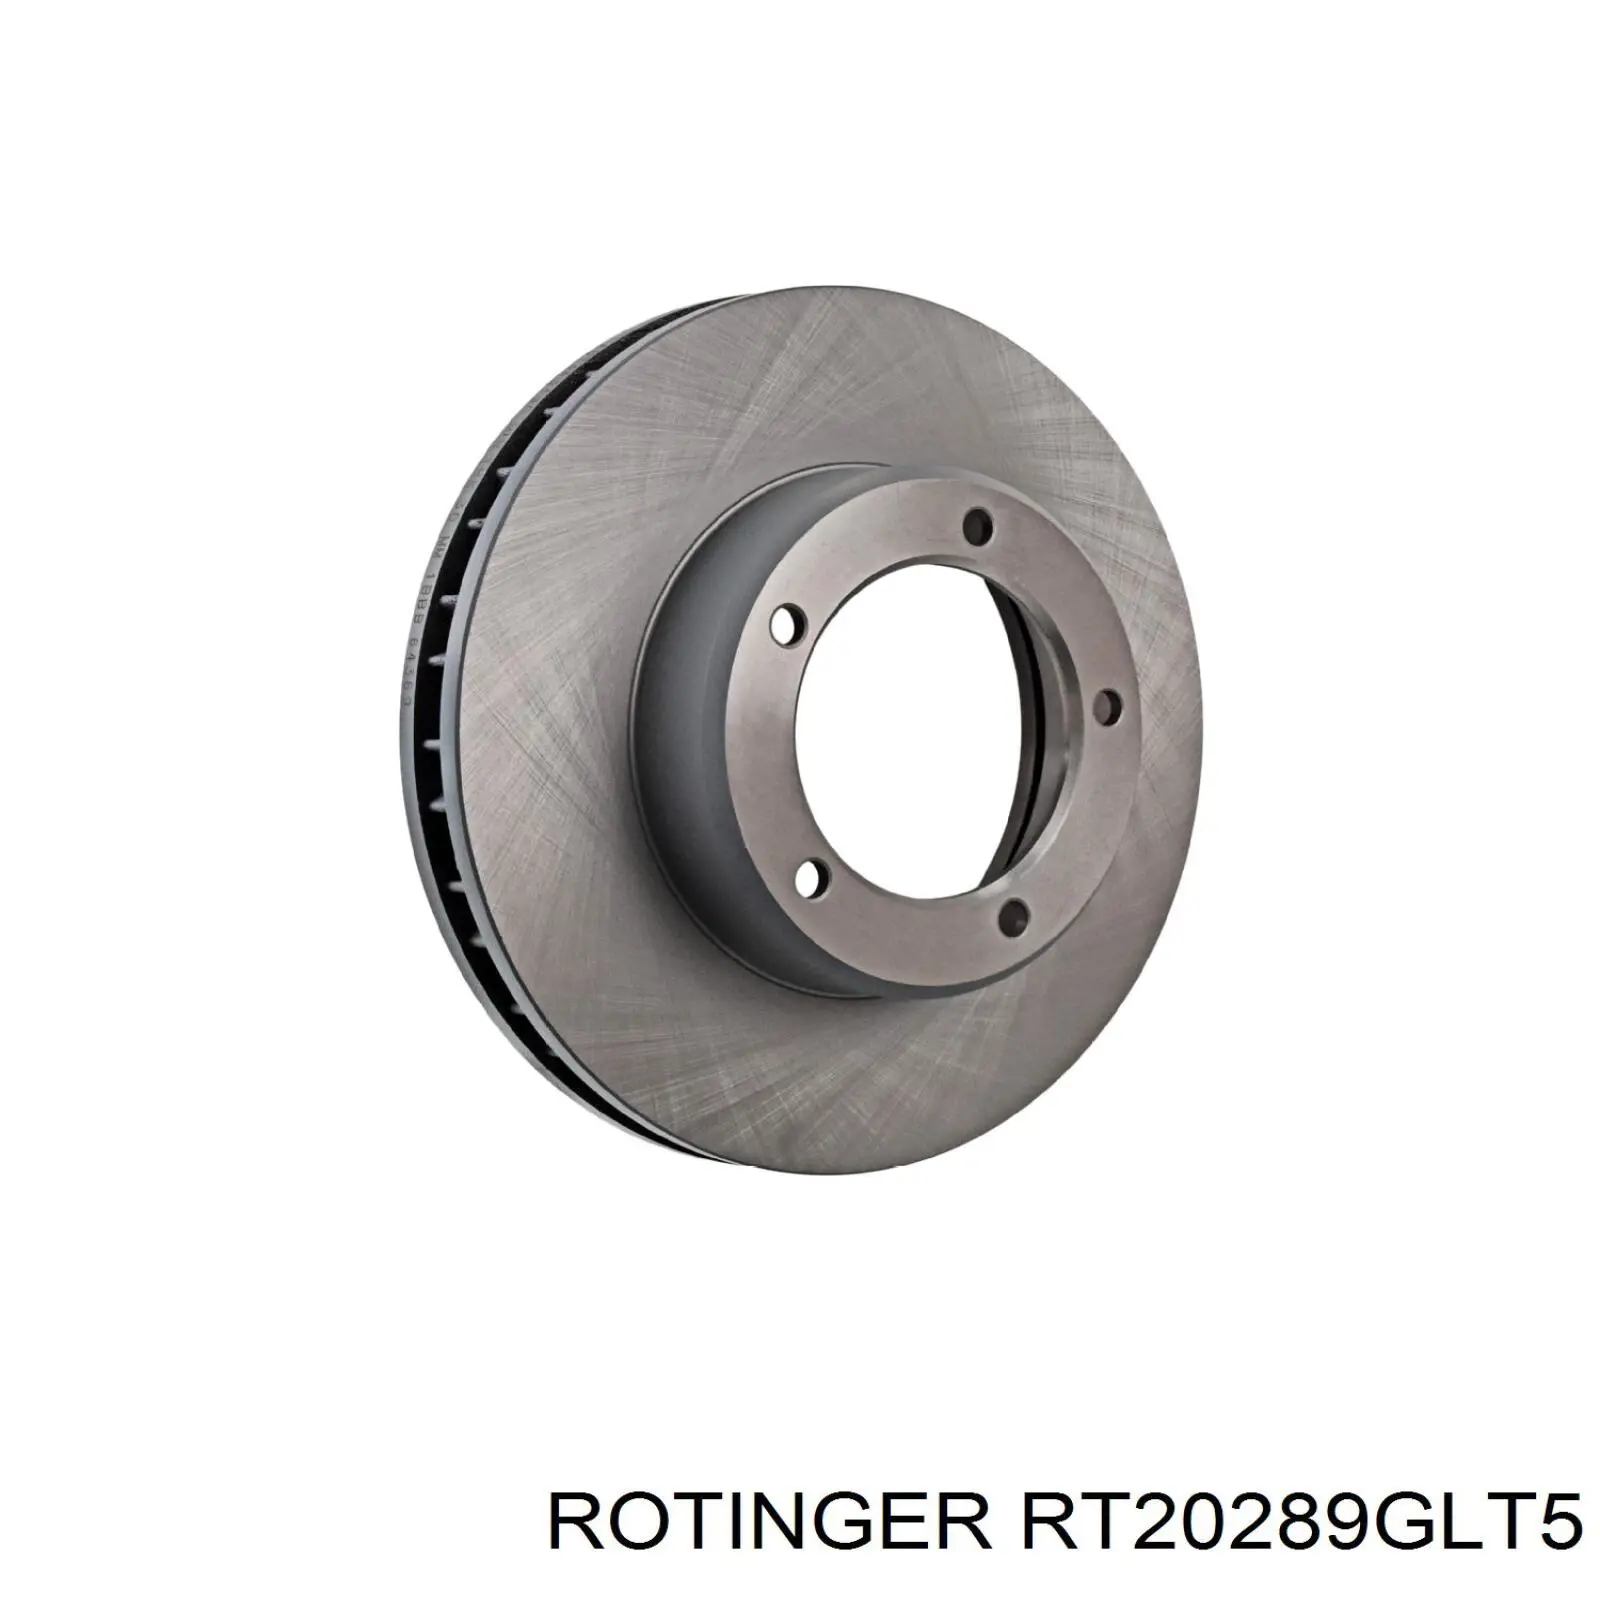 RT20289GLT5 Rotinger disco do freio dianteiro